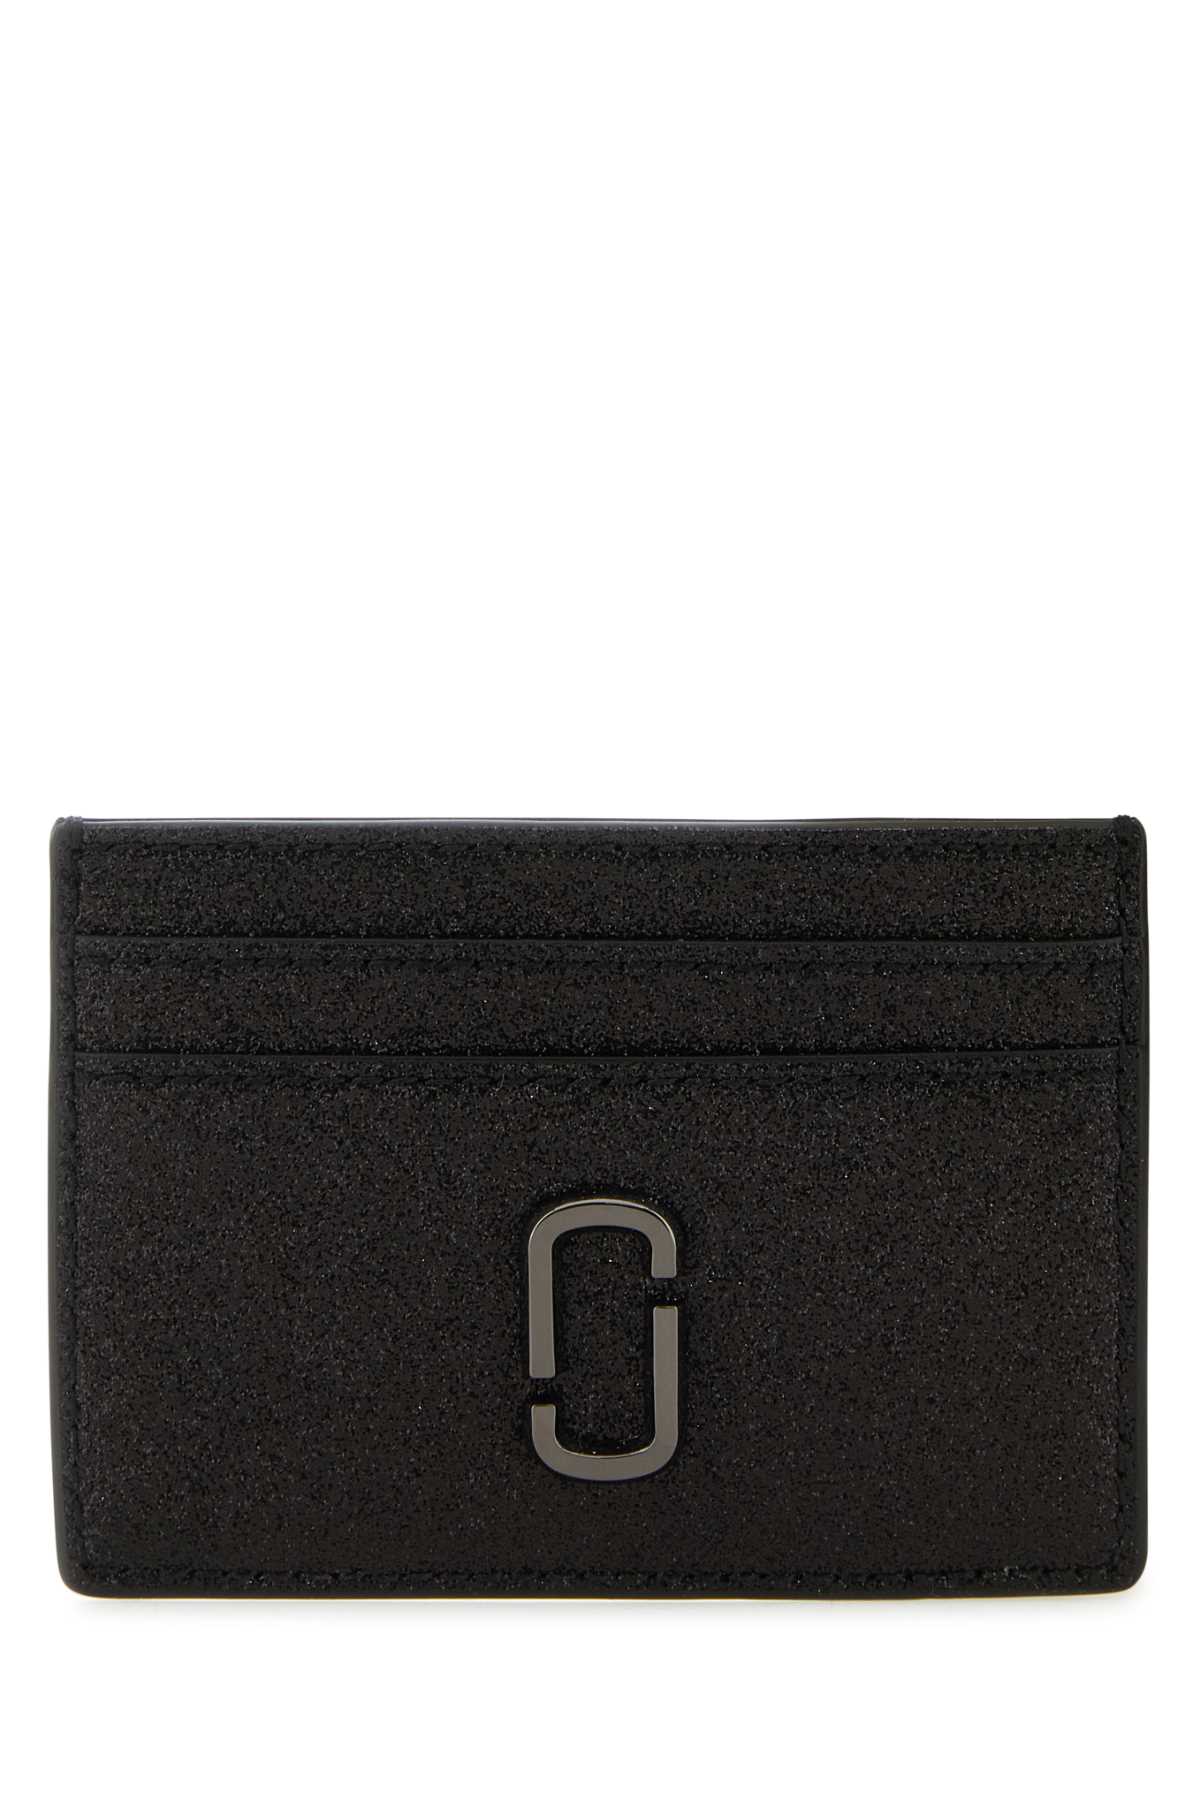 Marc Jacobs Black Leather J Marc Card Holder